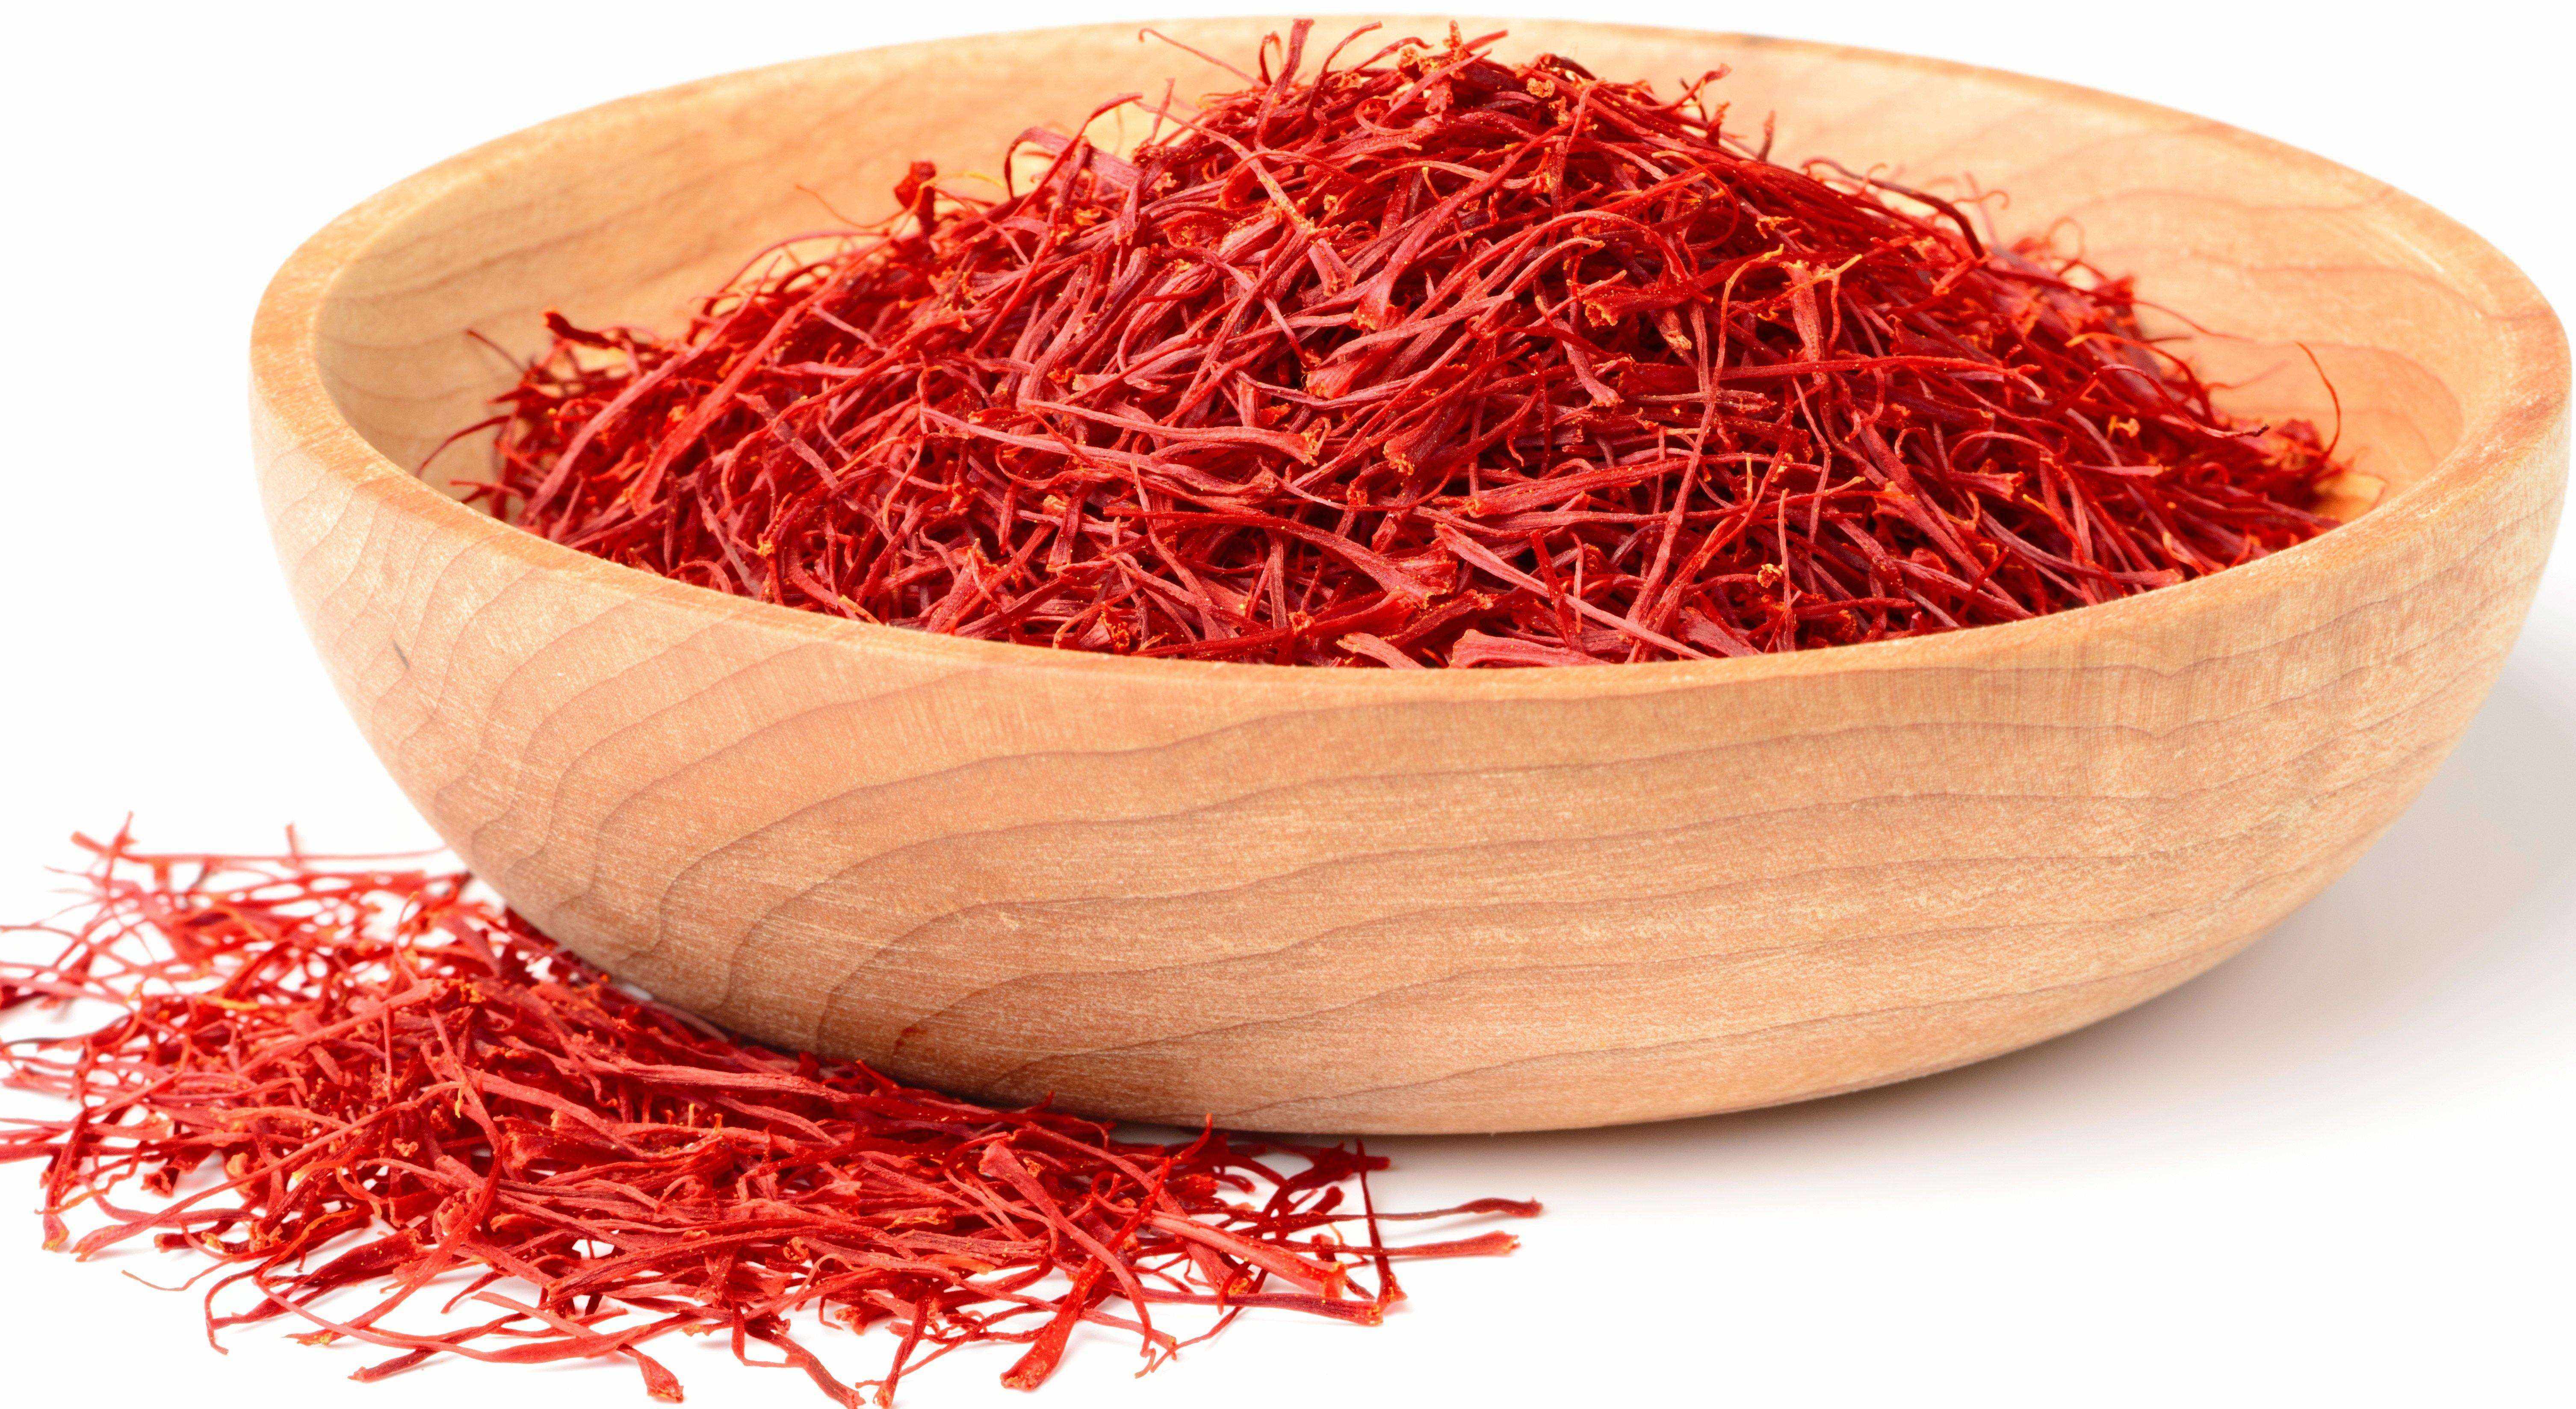 saffron threads in wooden bowl